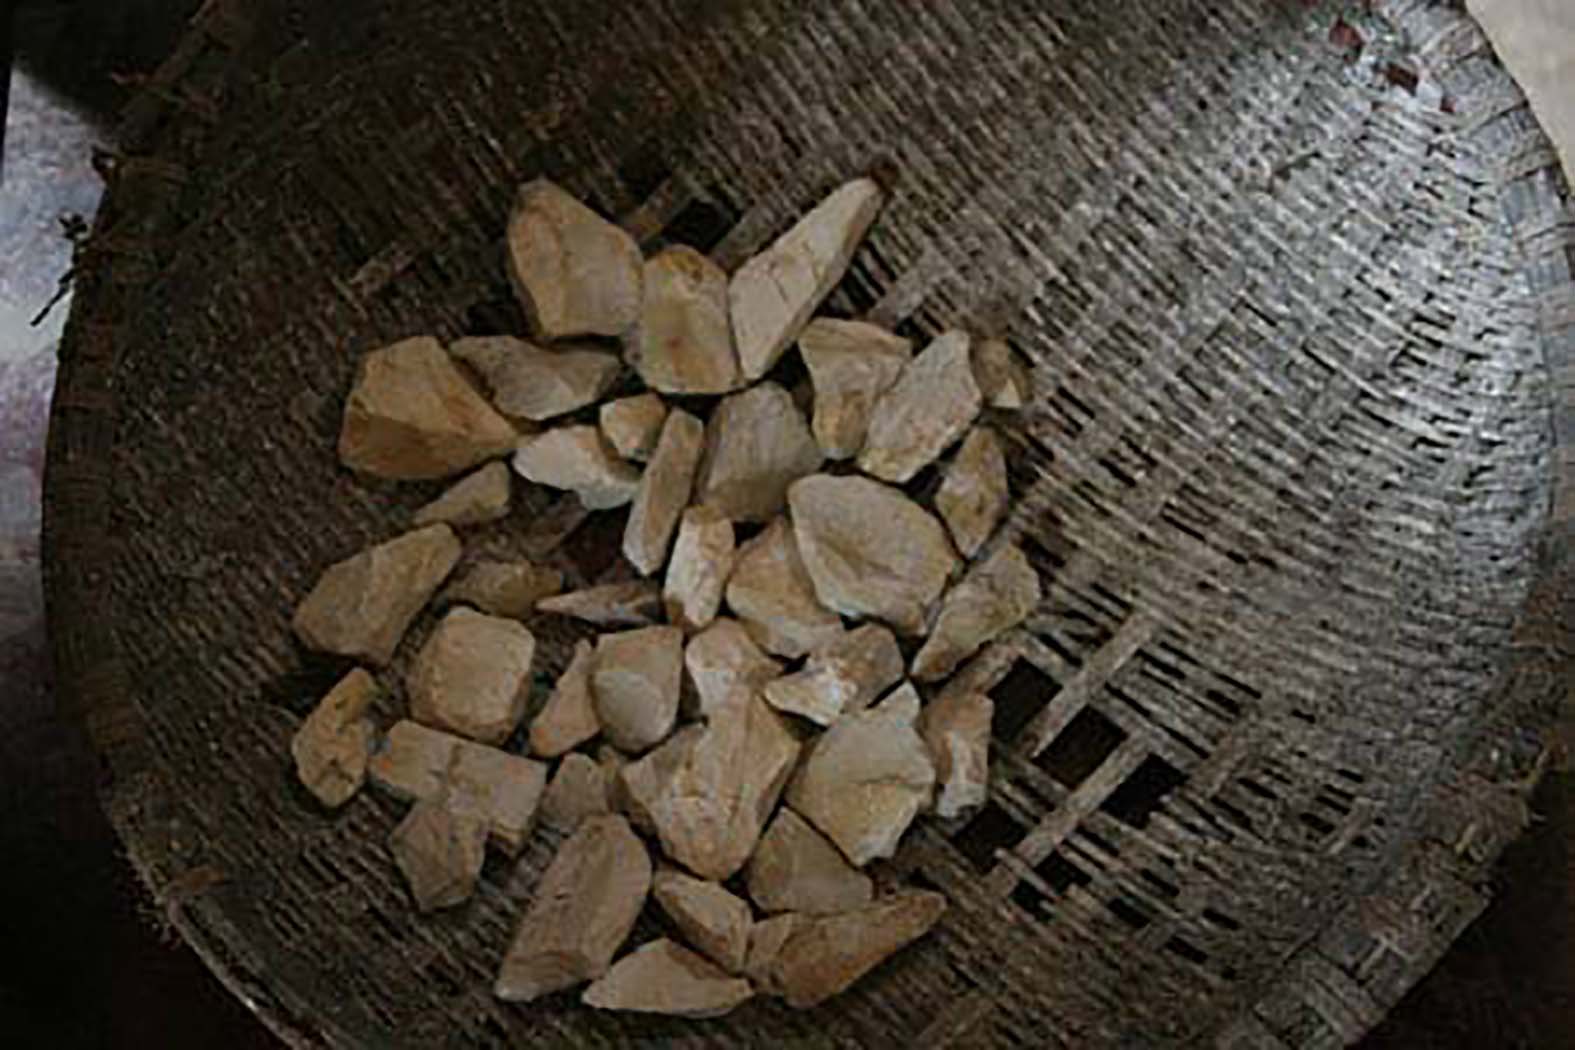 Lạ lùng món ăn từ nguyên liệu đất ở Lập Thạch, Vĩnh Phúc - Ảnh 3.